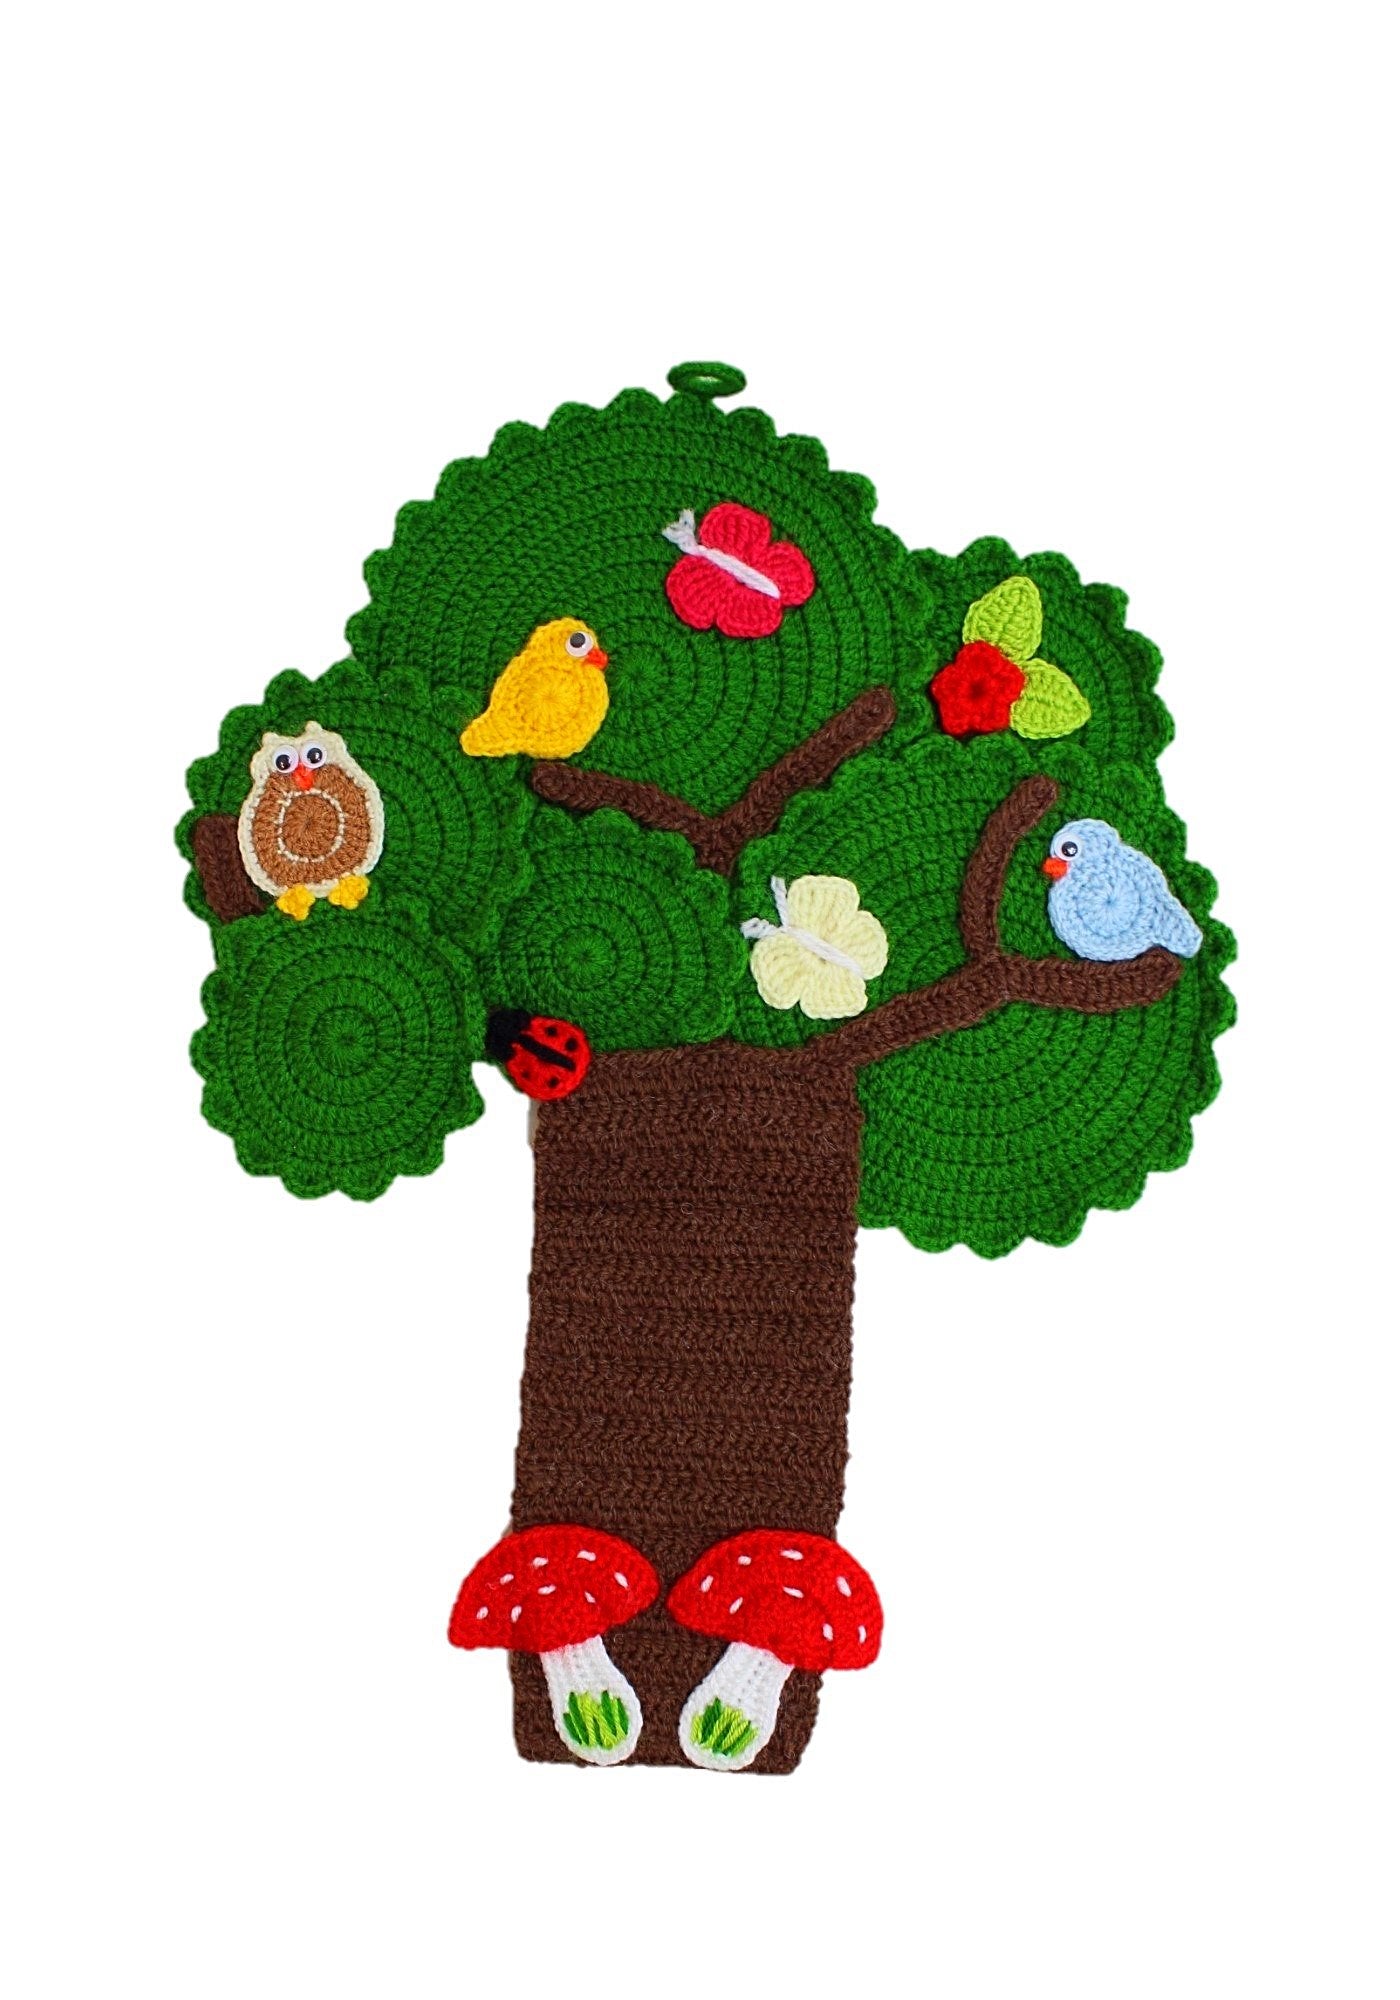 Crochet Tree Wall Hangings by OAK Charity